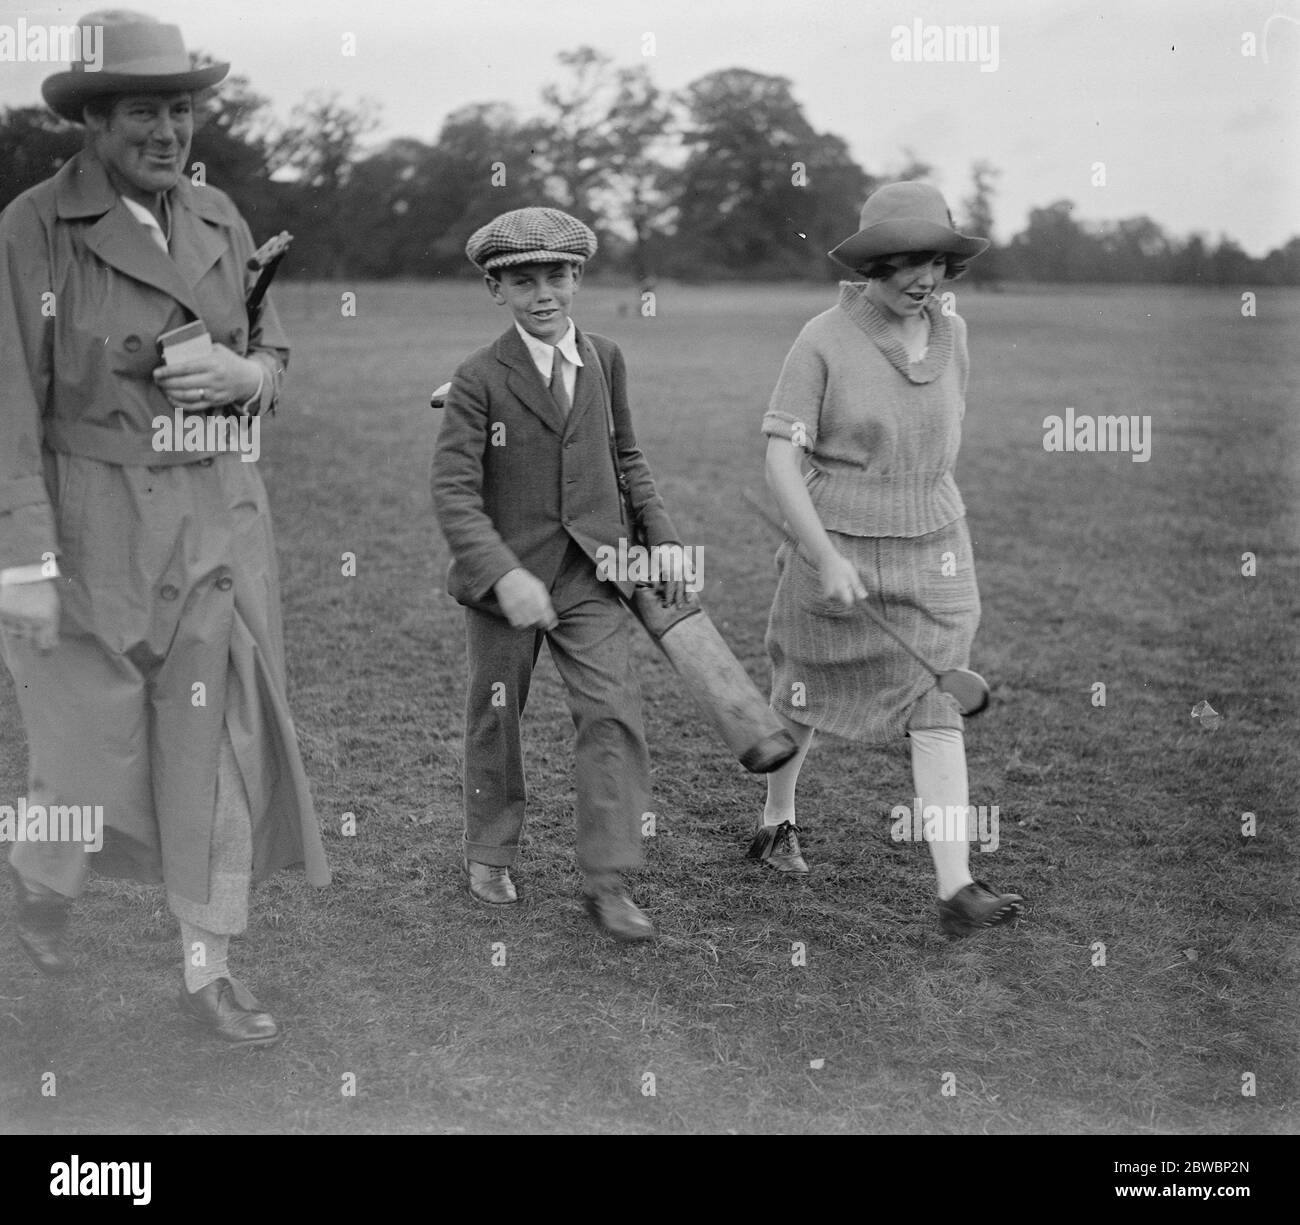 Championnat de golf de filles le troisième championnat de golf de filles a été rendu public aujourd'hui à Stoke Poges . Ici Miss R Pharmazyn avec son frère comme caddie 13 septembre 1921 Banque D'Images